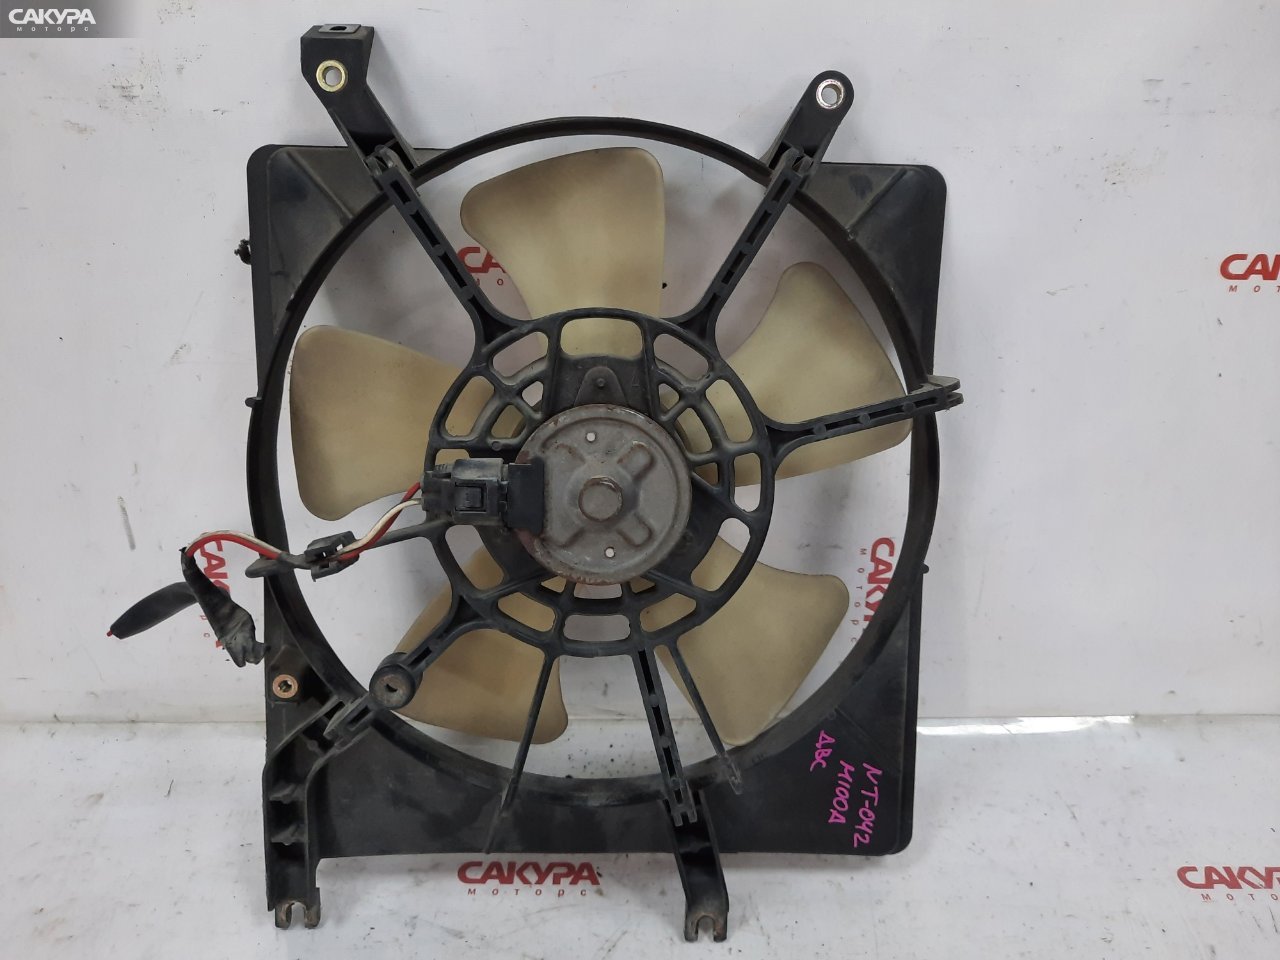 Вентилятор радиатора двигателя Toyota Duet M100A EJ-VE: купить в Сакура Красноярск.